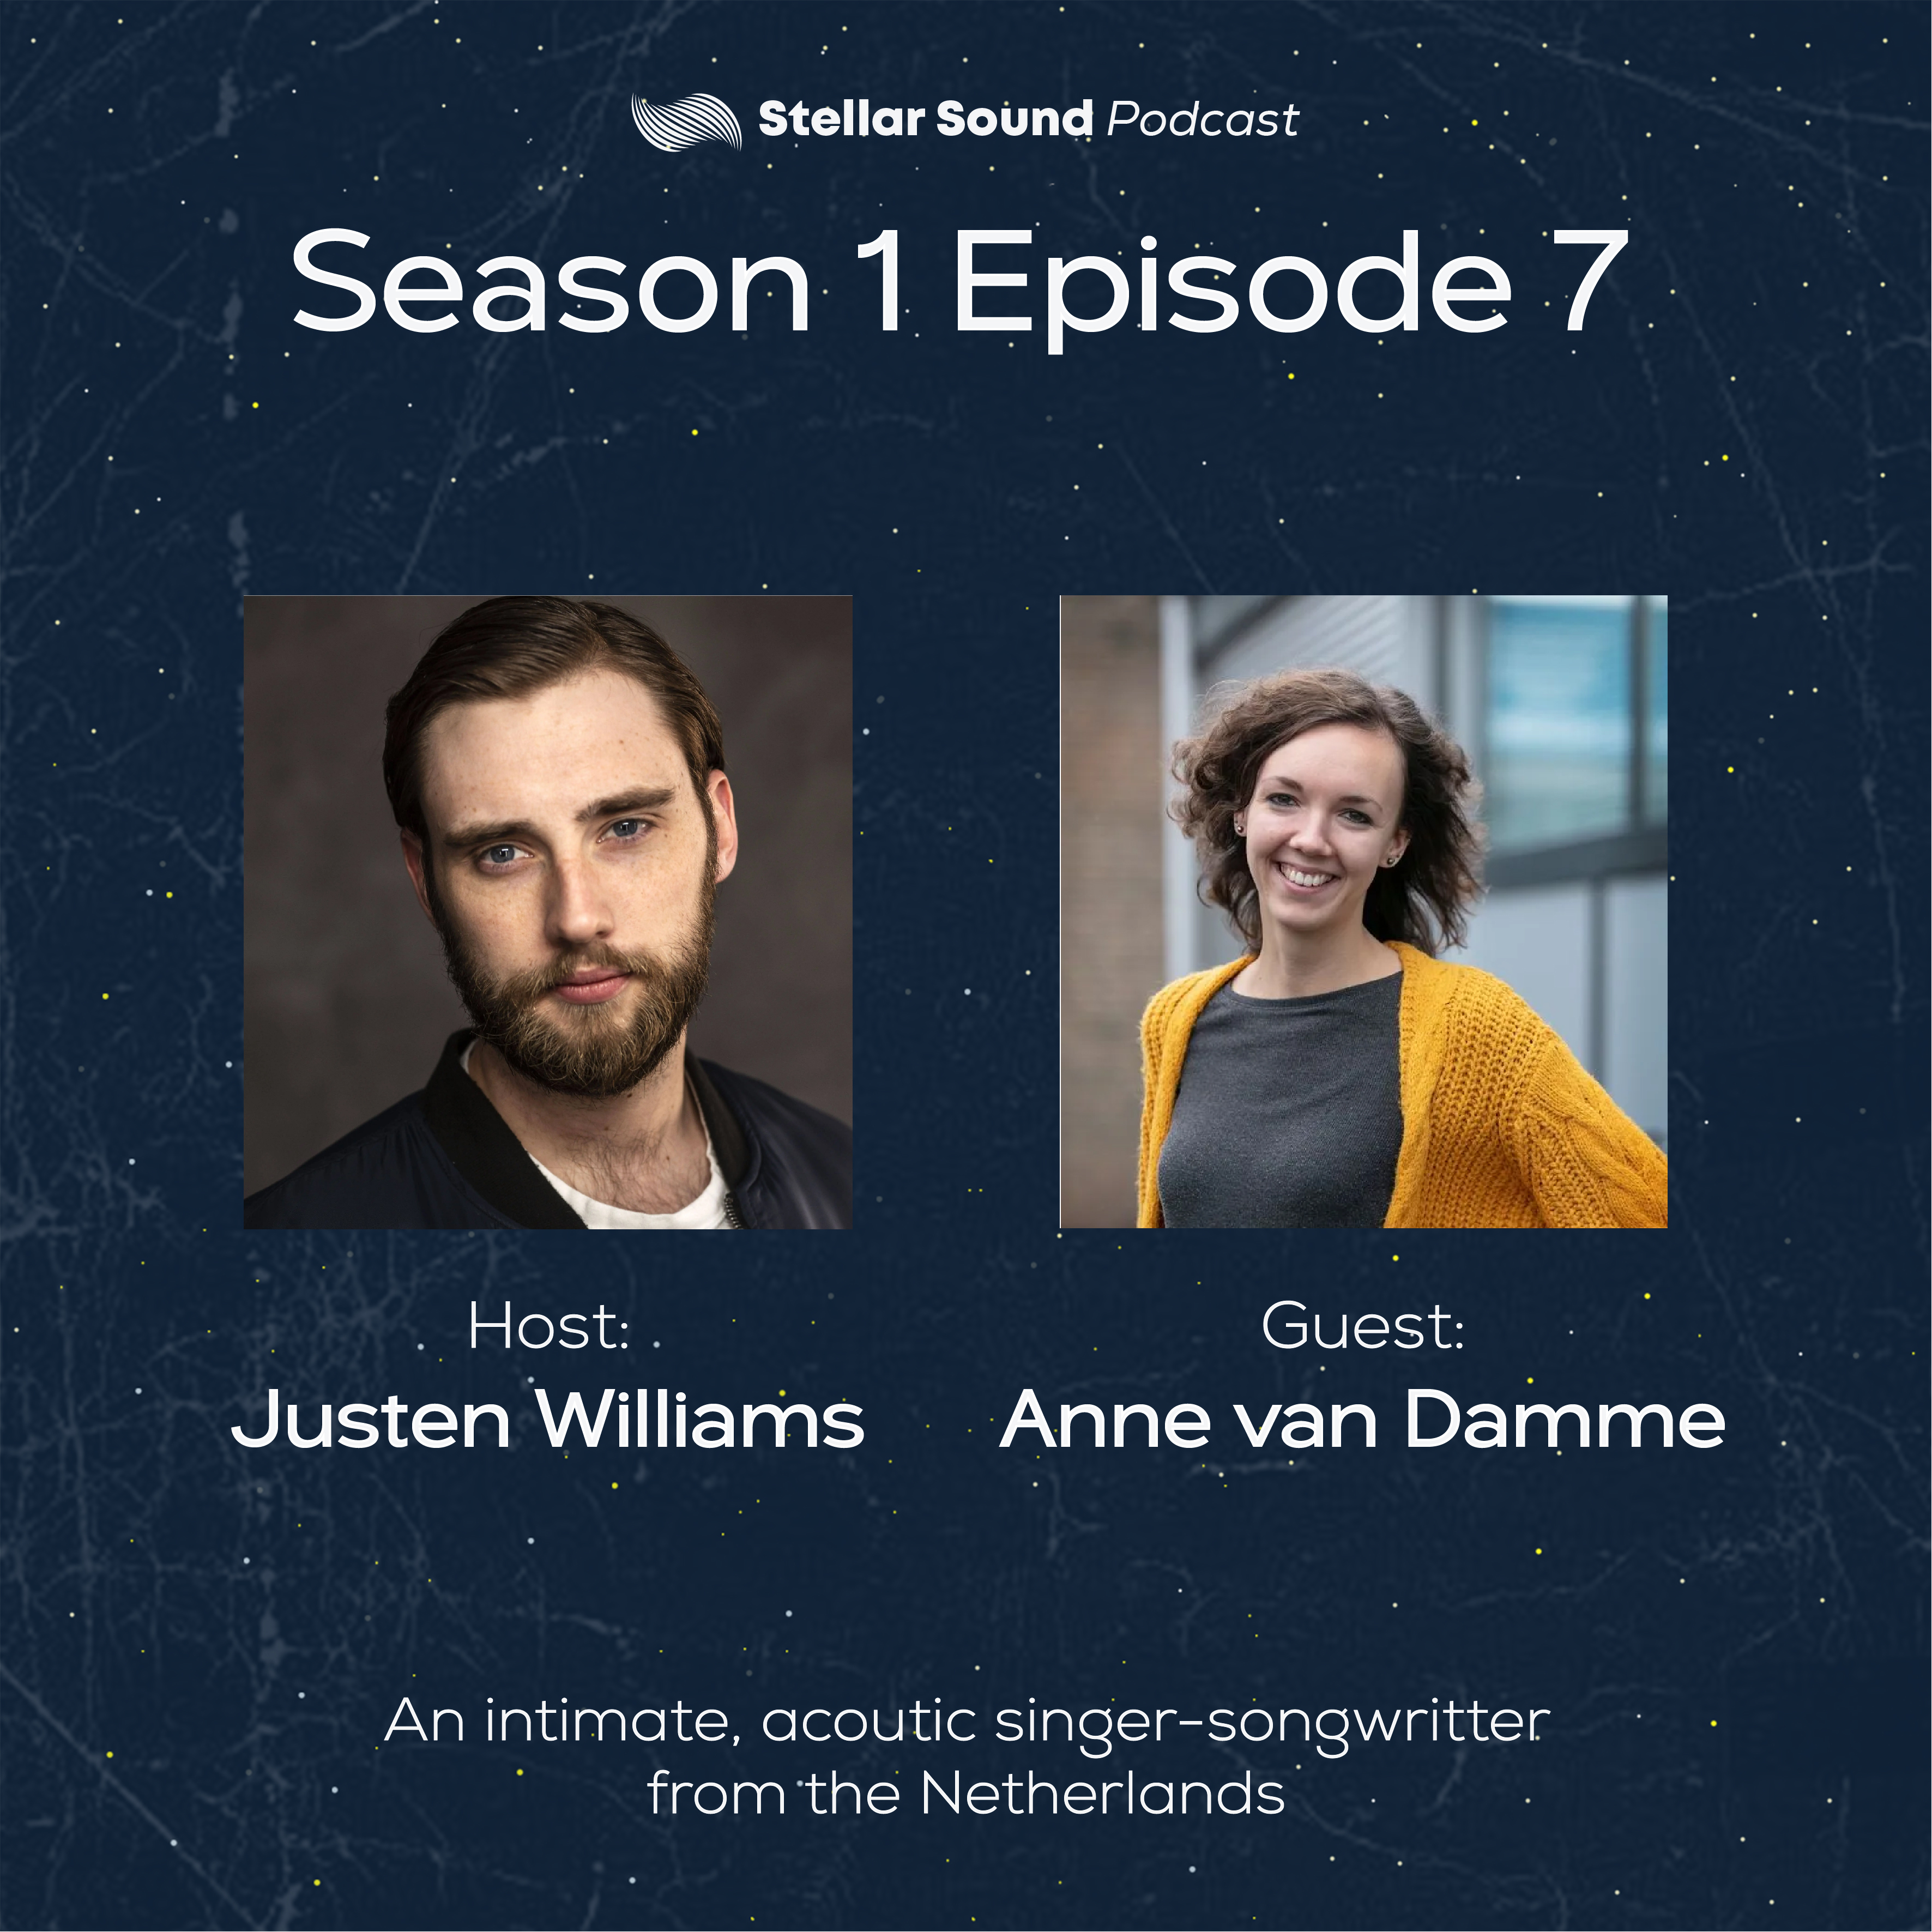 Episode 5:Anne van Damme